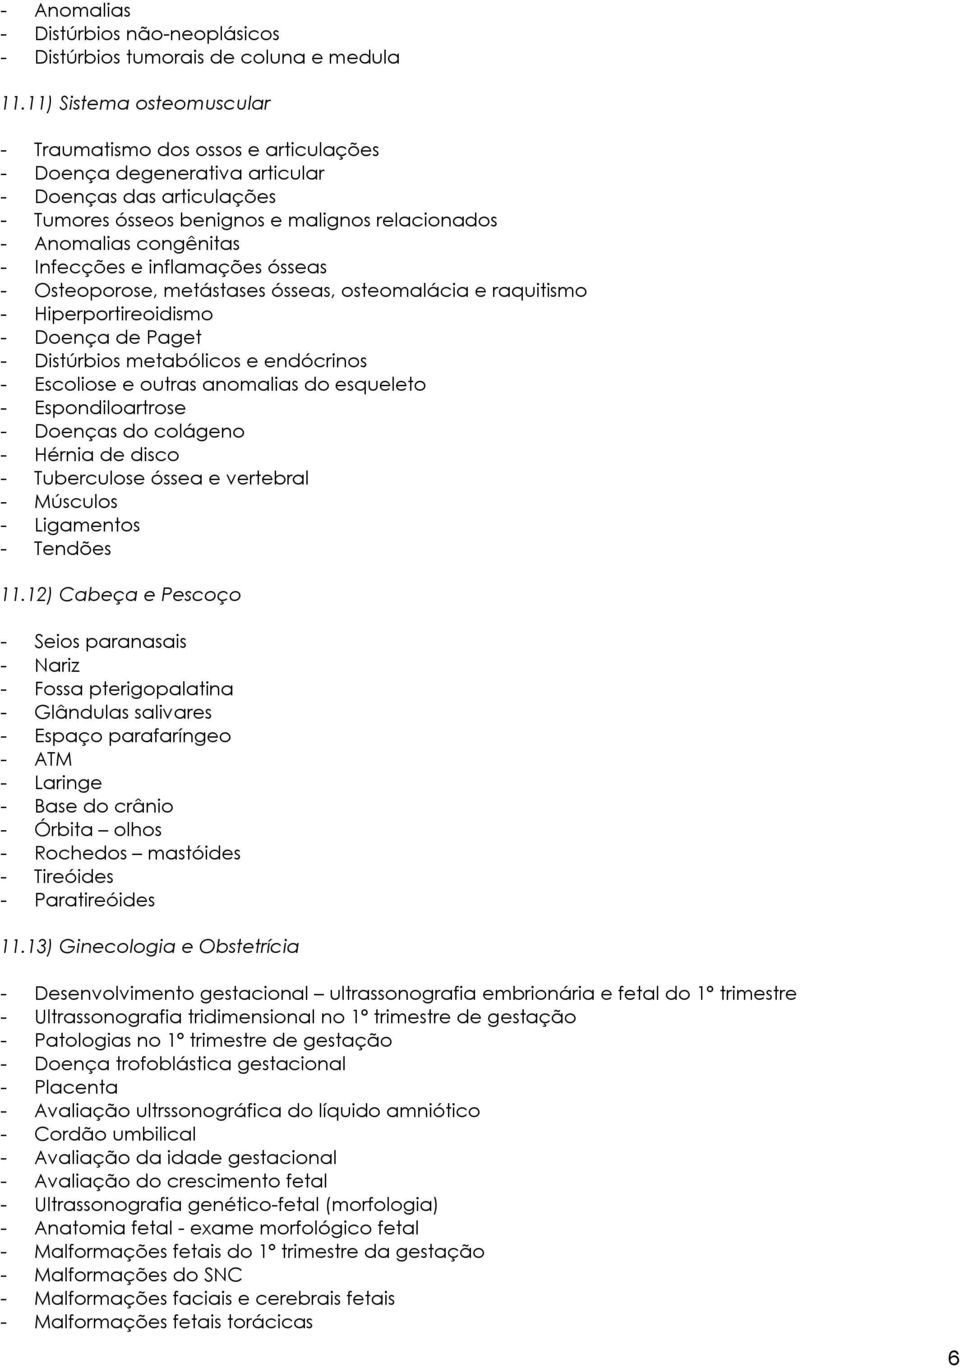 Infecções e inflamações ósseas - Osteoporose, metástases ósseas, osteomalácia e raquitismo - Hiperportireoidismo - Doença de Paget - Distúrbios metabólicos e endócrinos - Escoliose e outras anomalias